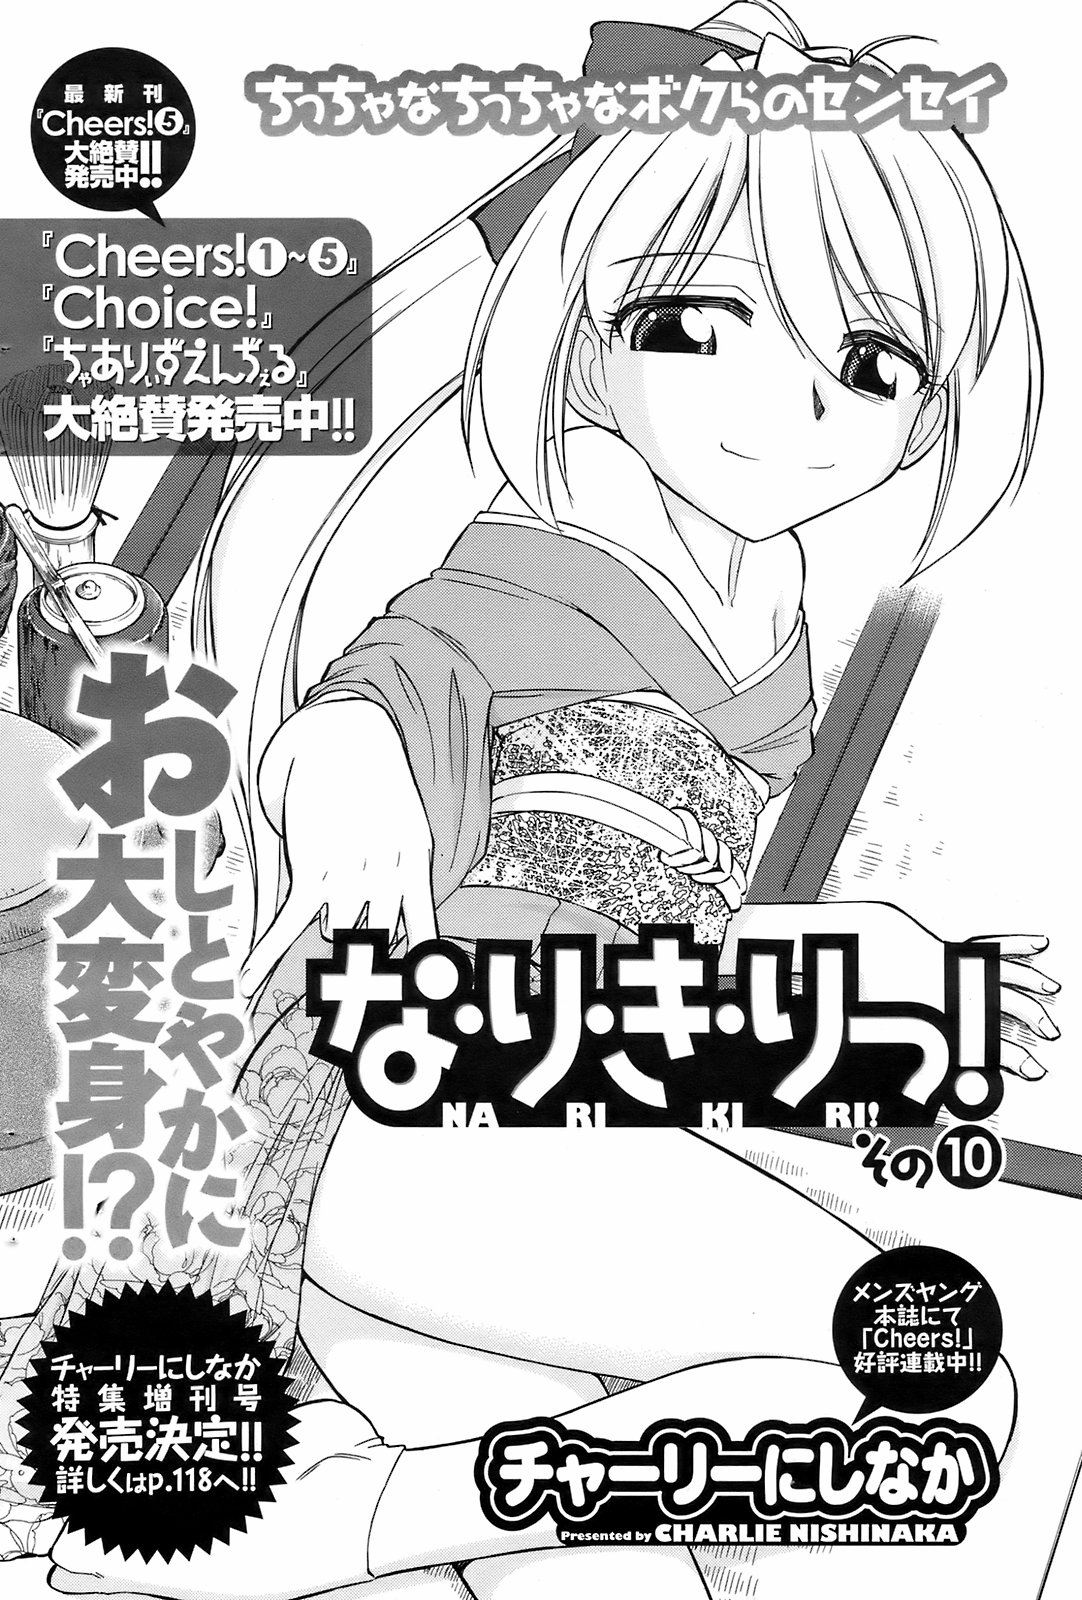 メンズヤングスペシャルIKAZUCHI雷 Vol.7 2008年9月号増刊